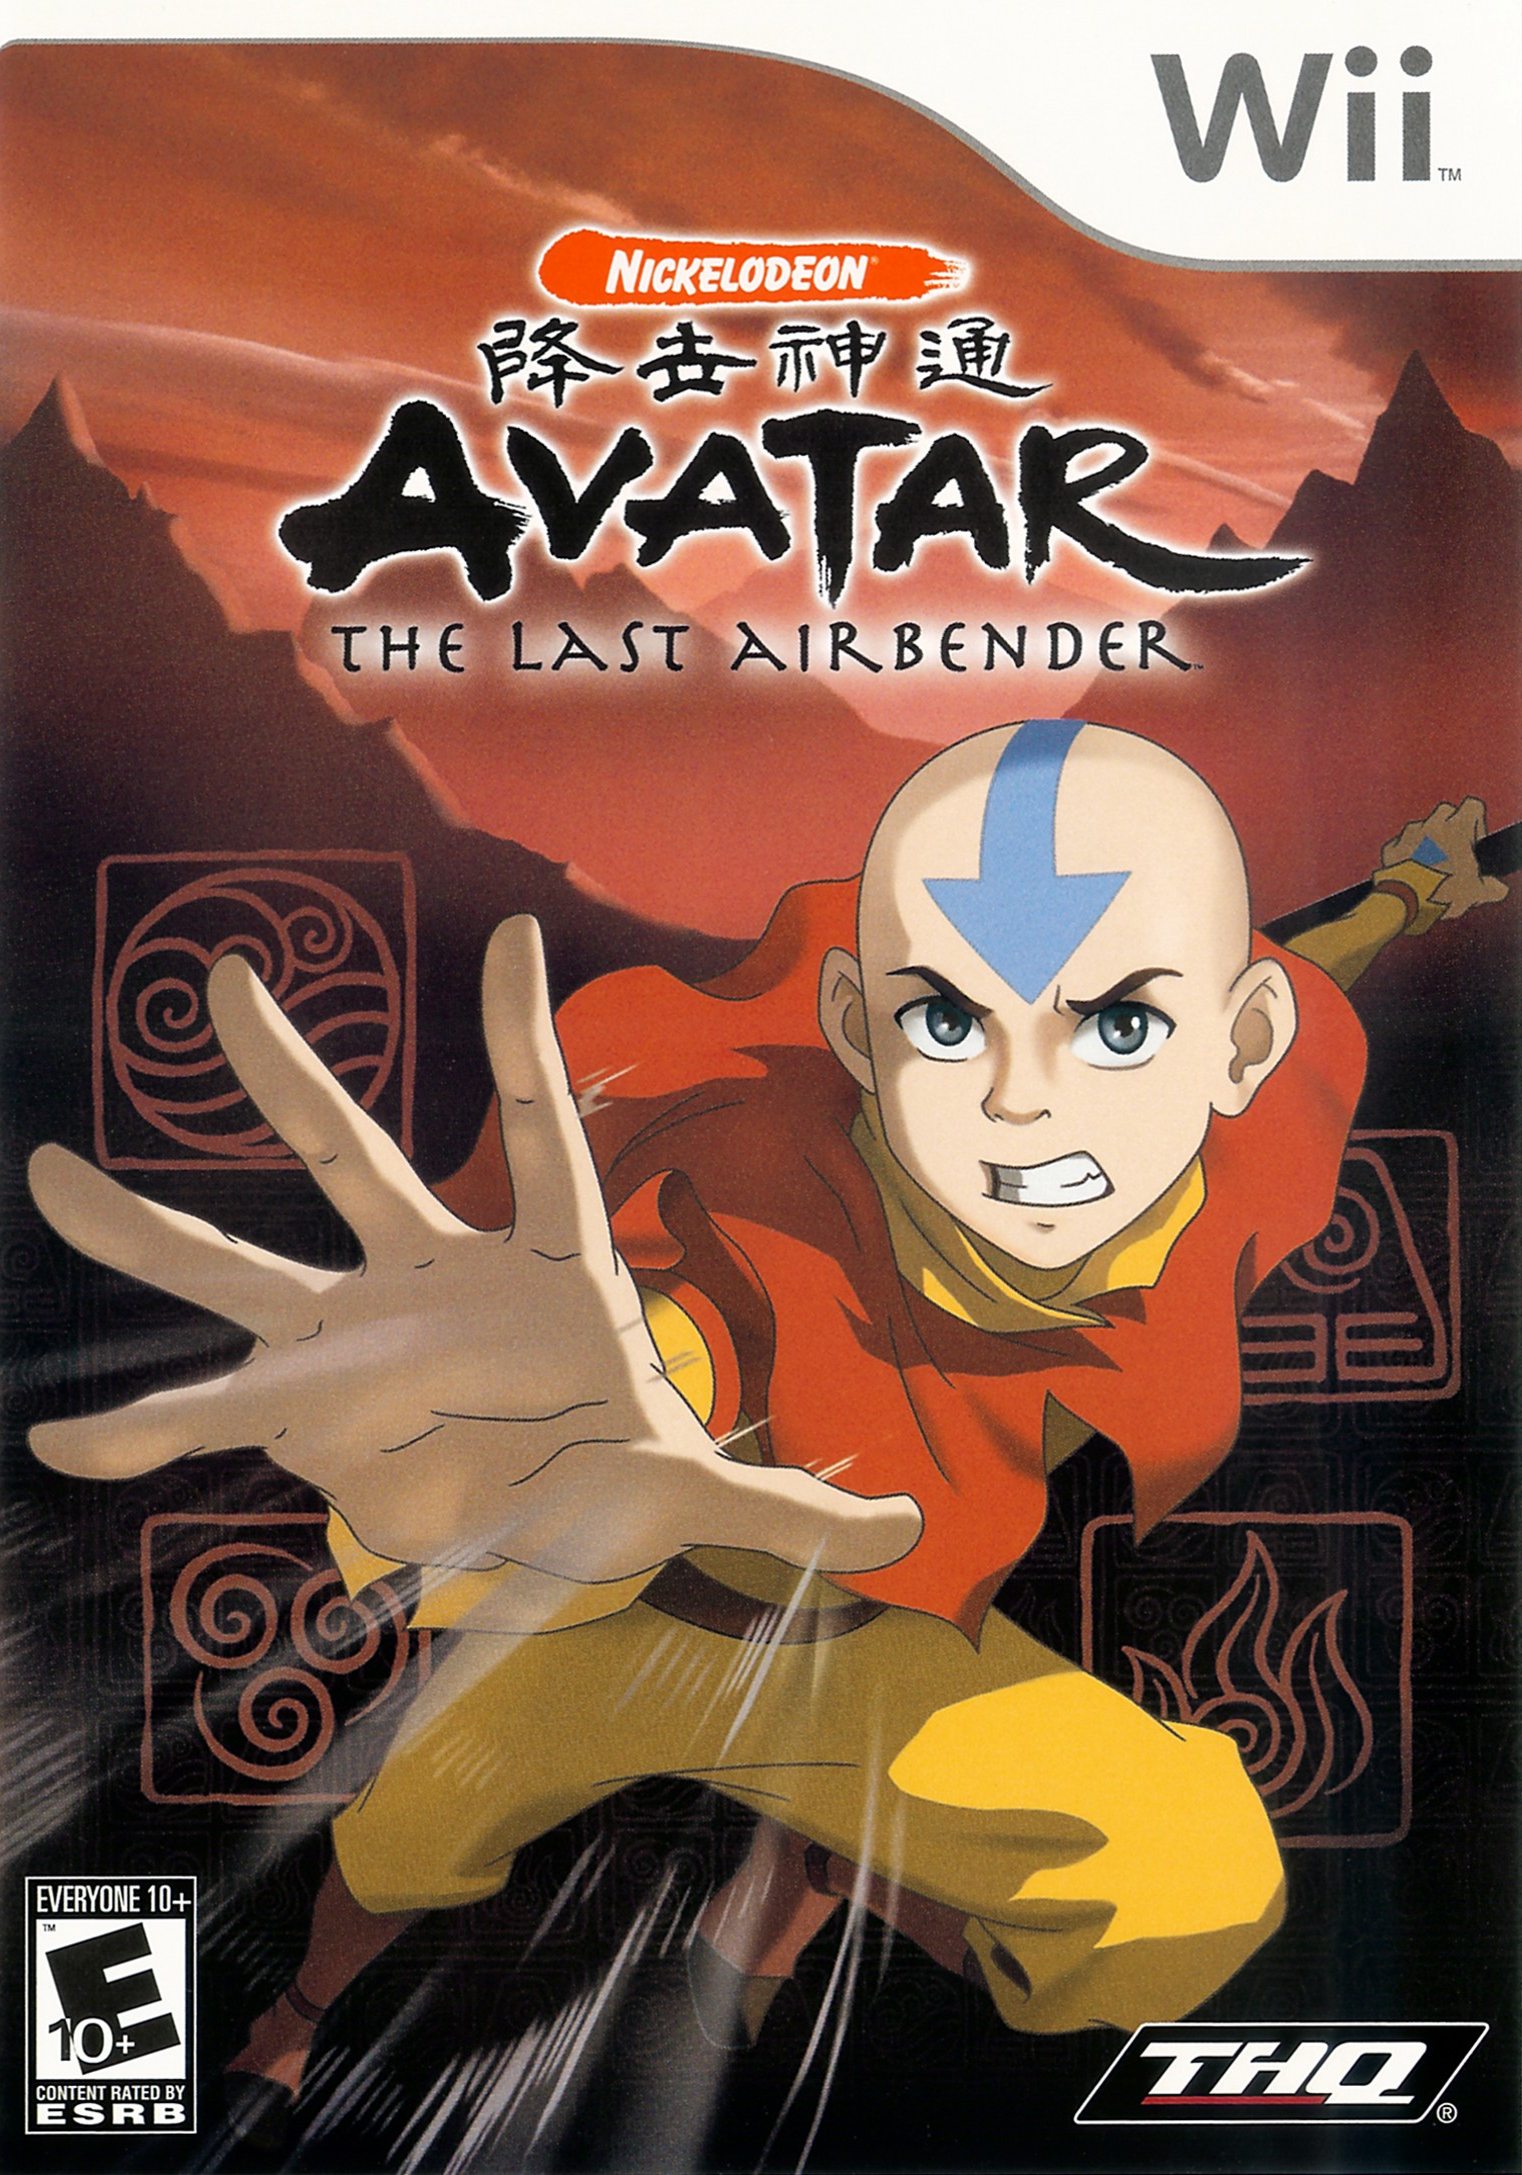 Avatar Last Airbender trên hệ máy Nintendo đem đến cho bạn những trải nghiệm game thú vị nhất. Bạn sẽ được sống lại truyền thuyết về Aang, Katara, Sokka và Toph, khám phá thế giới Avatar đầy màu sắc và trải nghiệm những cuộc phiêu lưu đầy kịch tính.